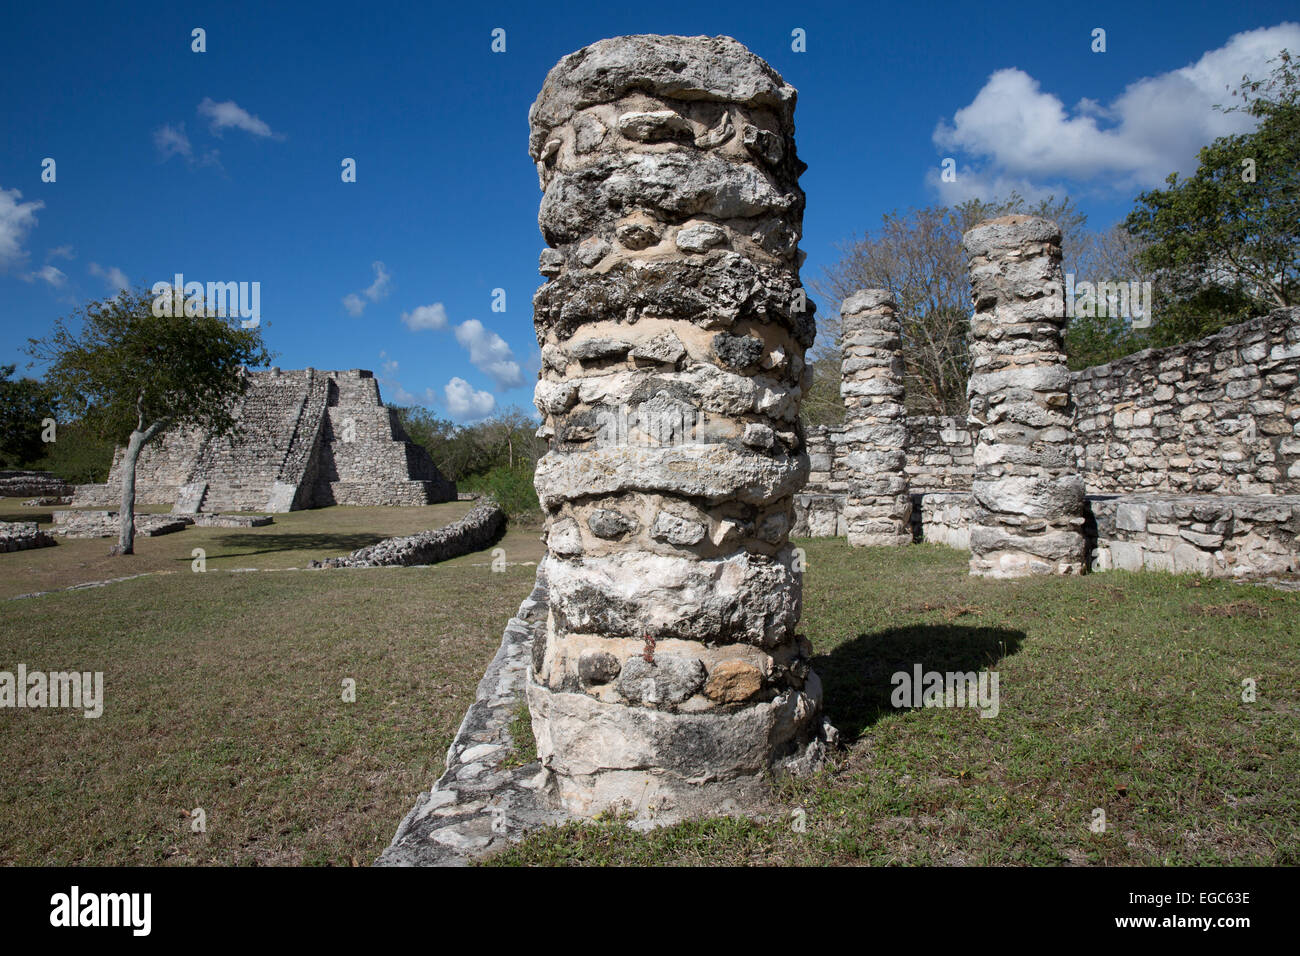 Mayan ruins at Mayapan, Yucatan, Mexico Stock Photo